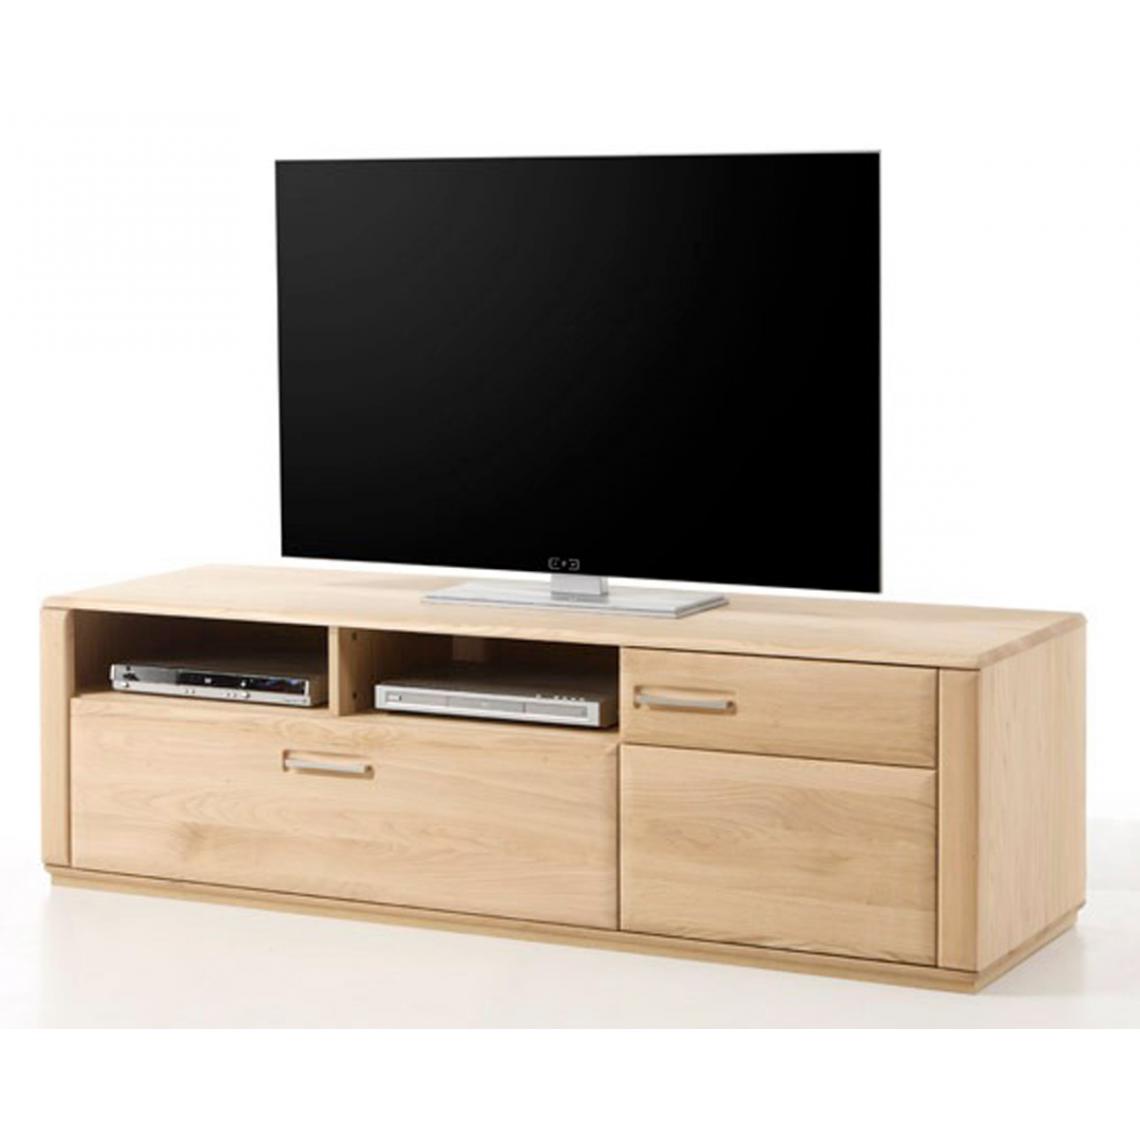 Pegane - Meuble TV coloris chêne blanchi huilé - Longueur 179 x Hauteur 50 x Profondeur 51 cm - Meubles TV, Hi-Fi